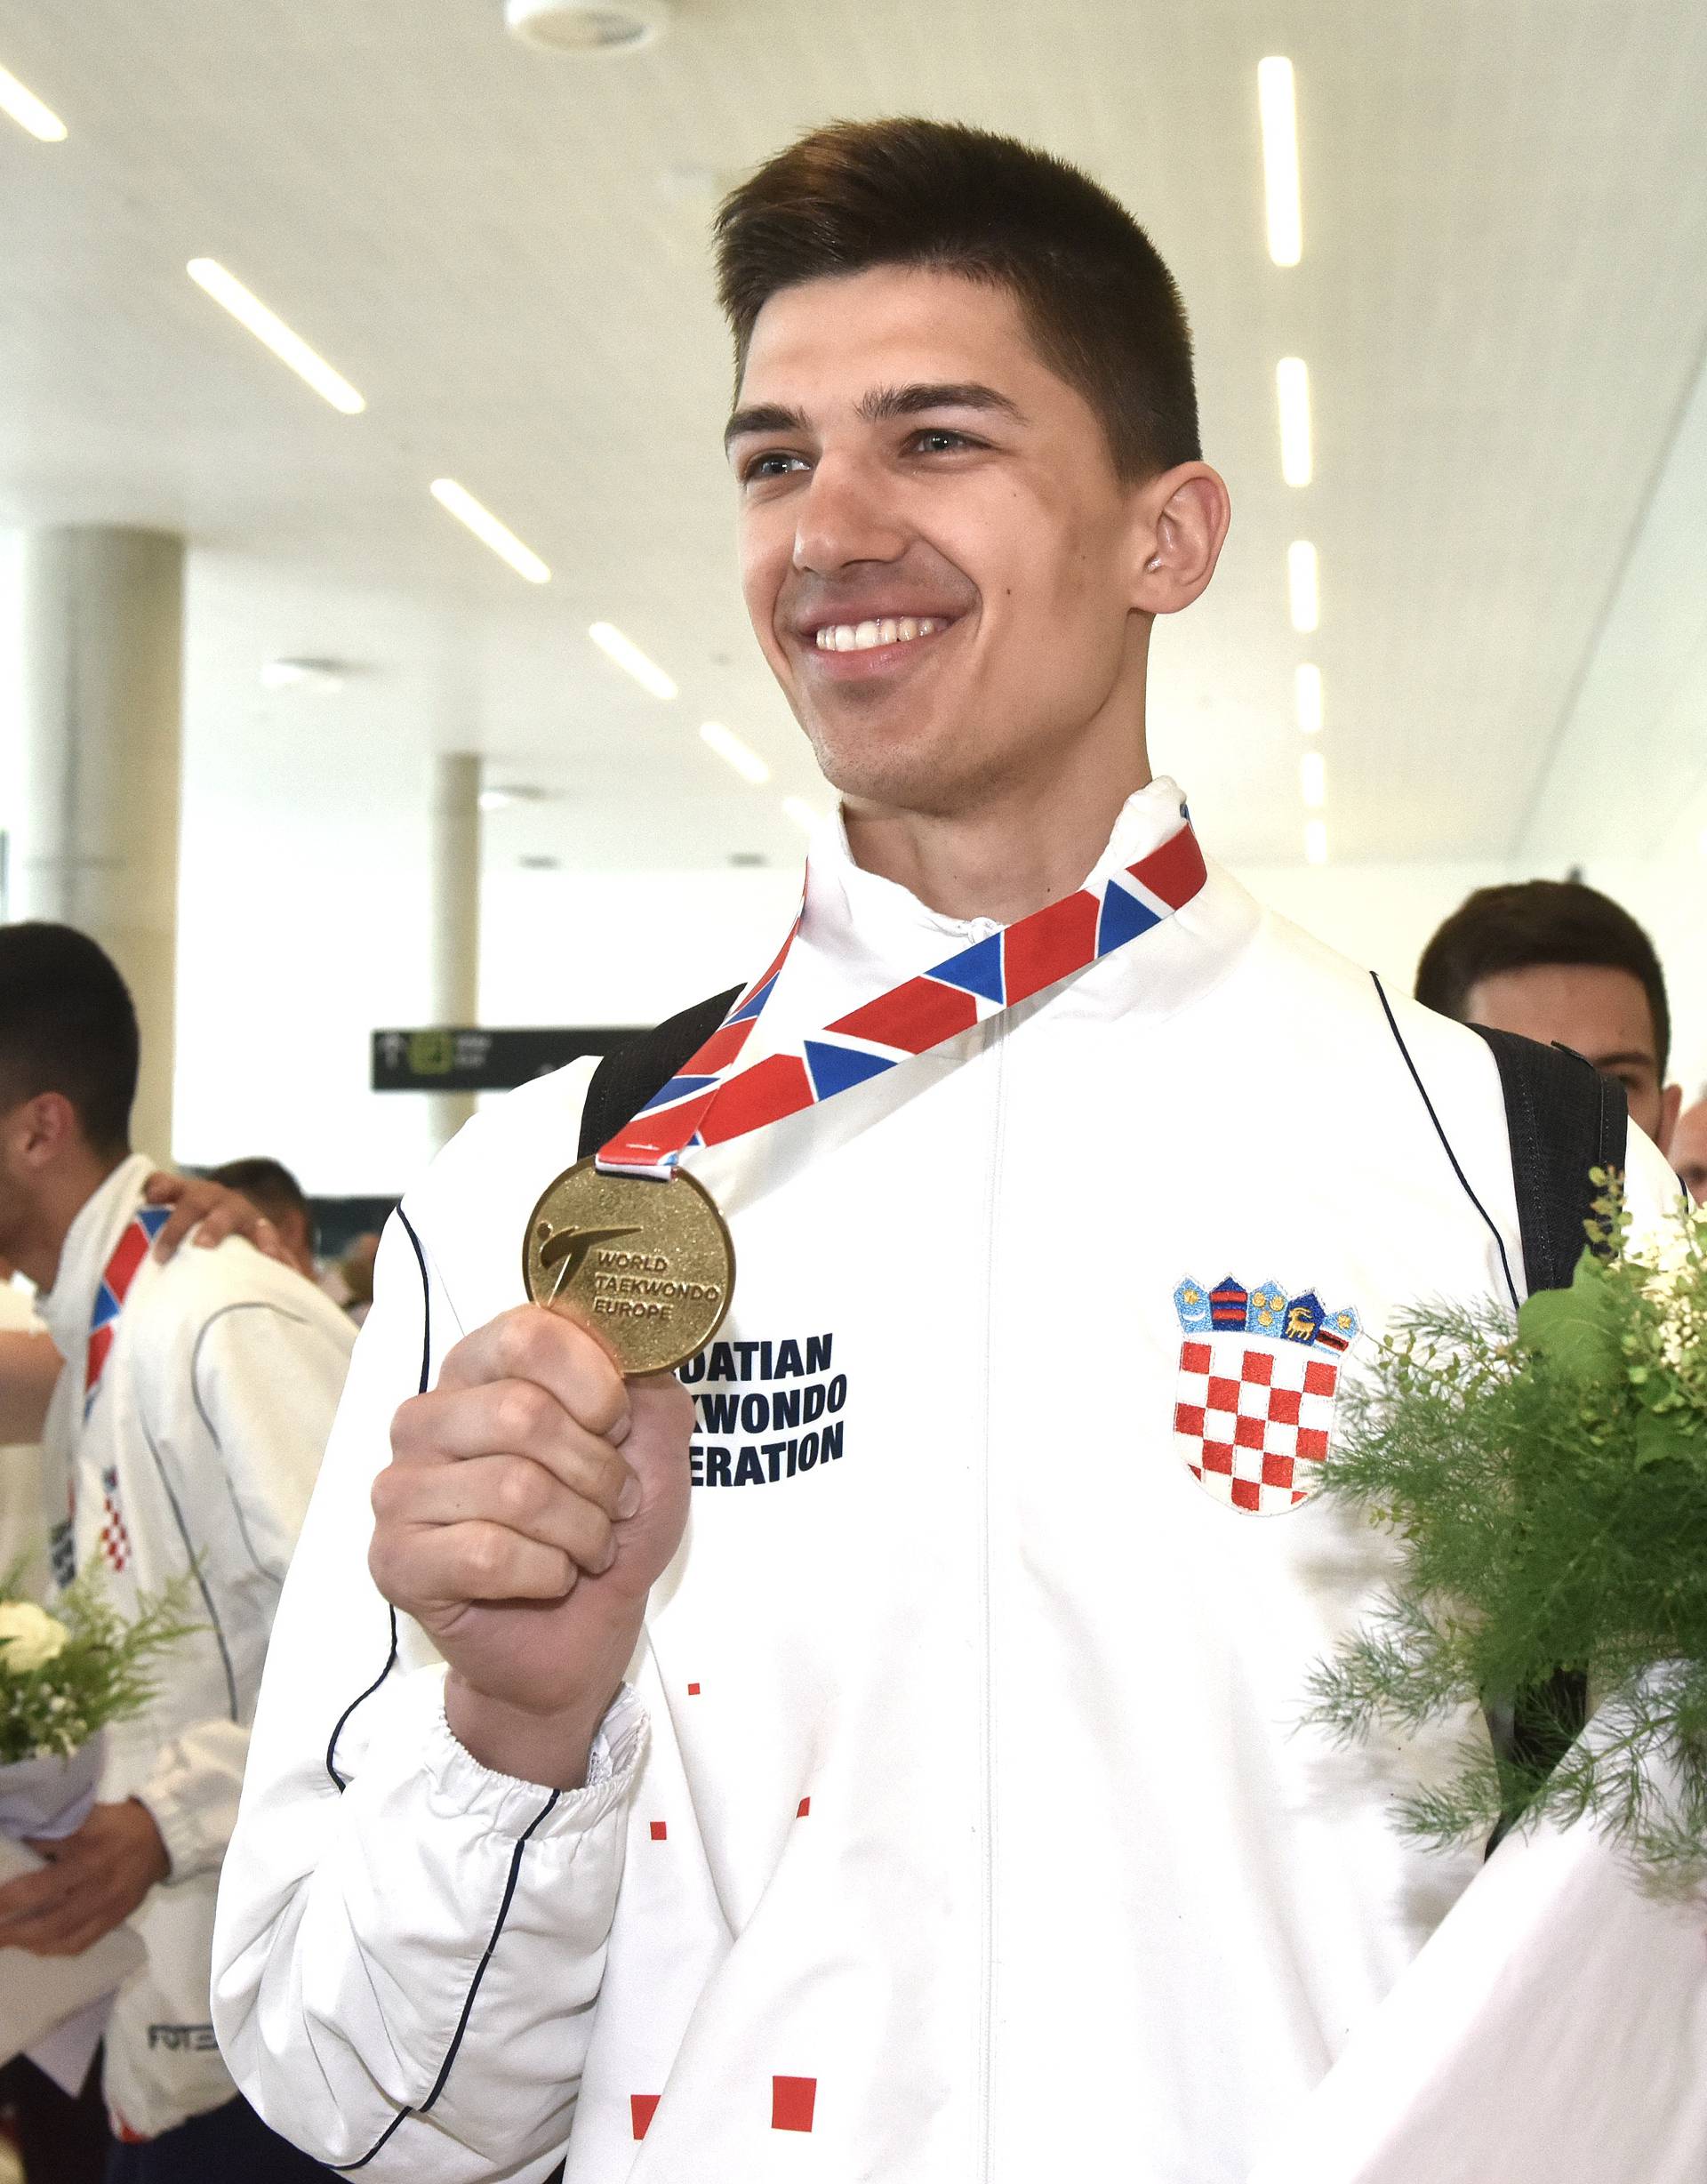 Hrvatski taekwondo poharao je Europu! Medaljaši su stigli kući